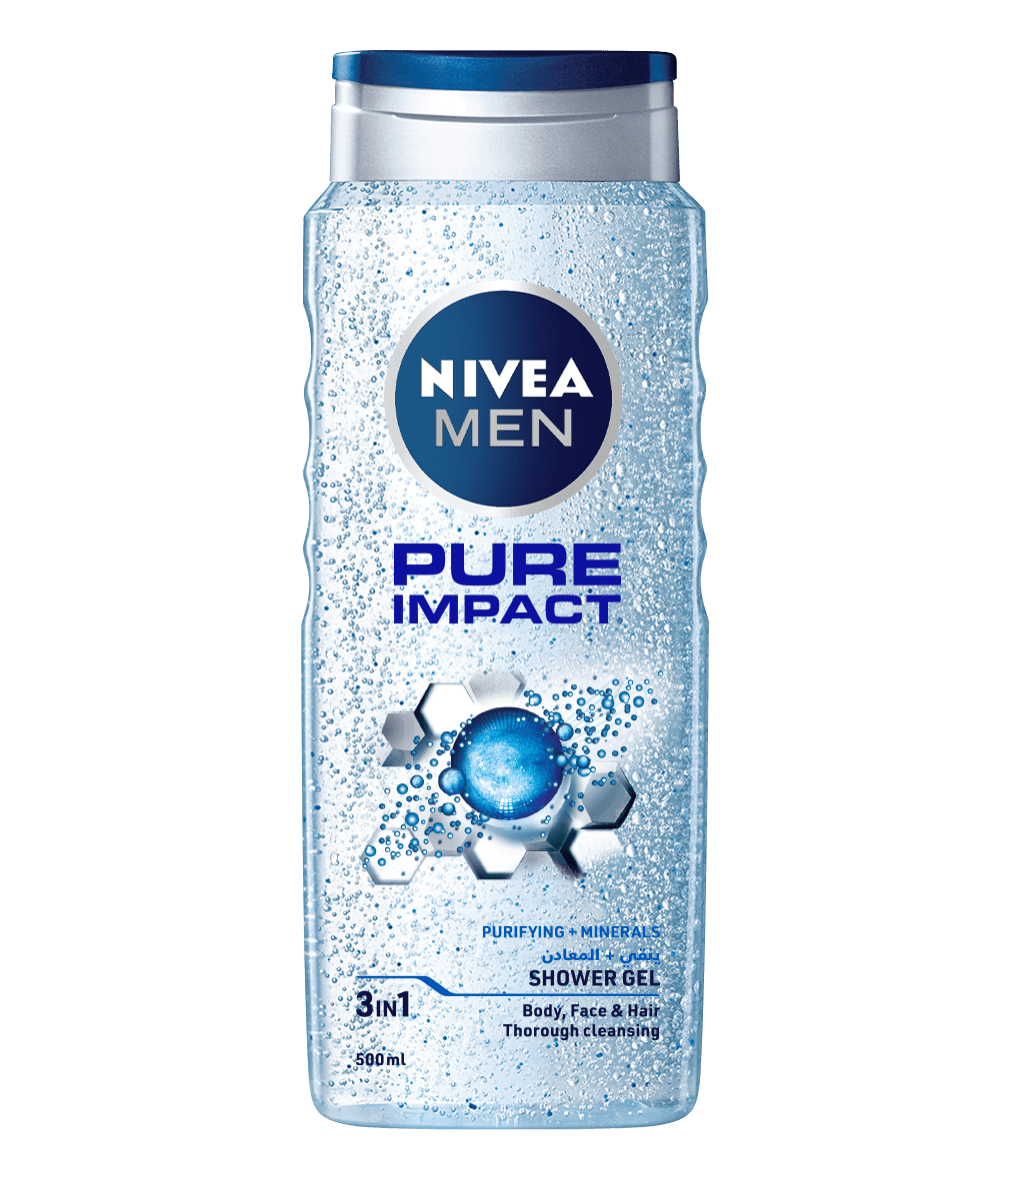 NIVEA Men Pure Impact Gel 500ml clean packshot bi-lingual